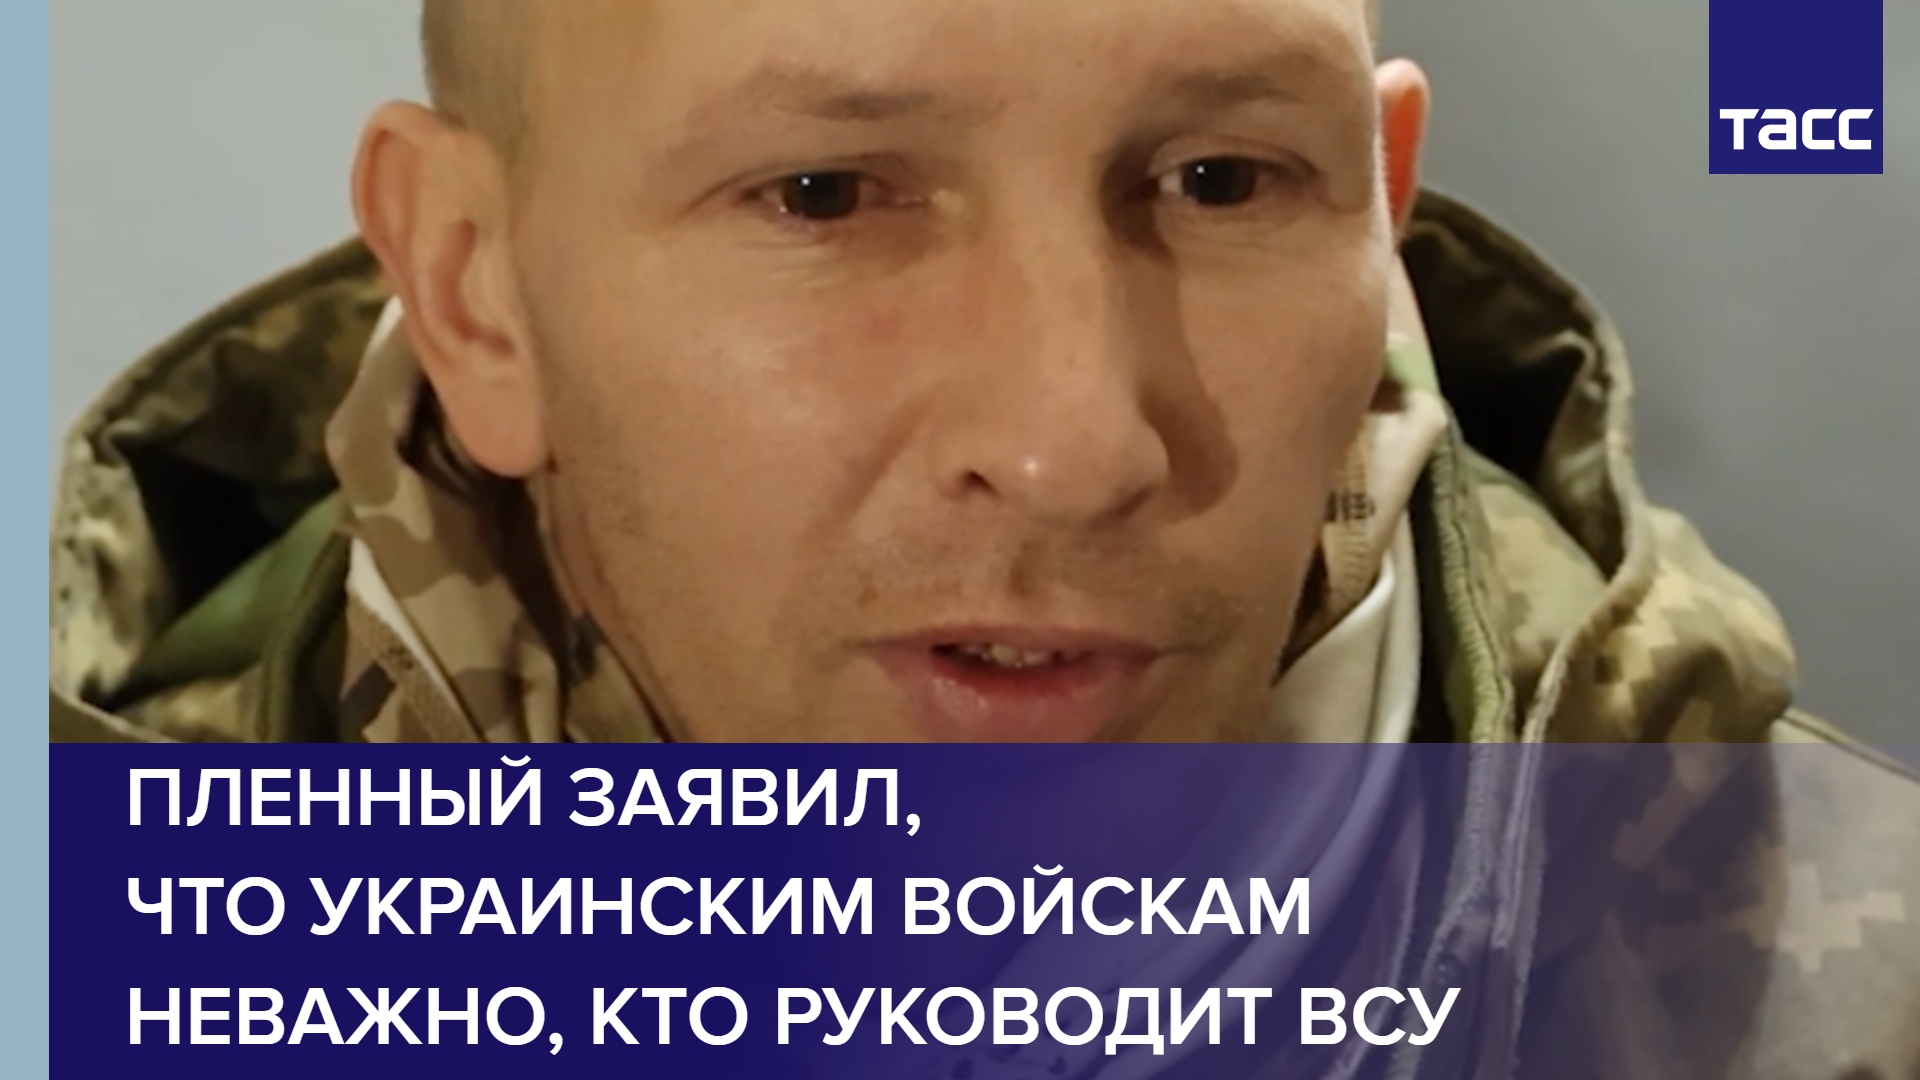 Пленный заявил, что украинским войскам неважно, кто руководит ВСУ shorts